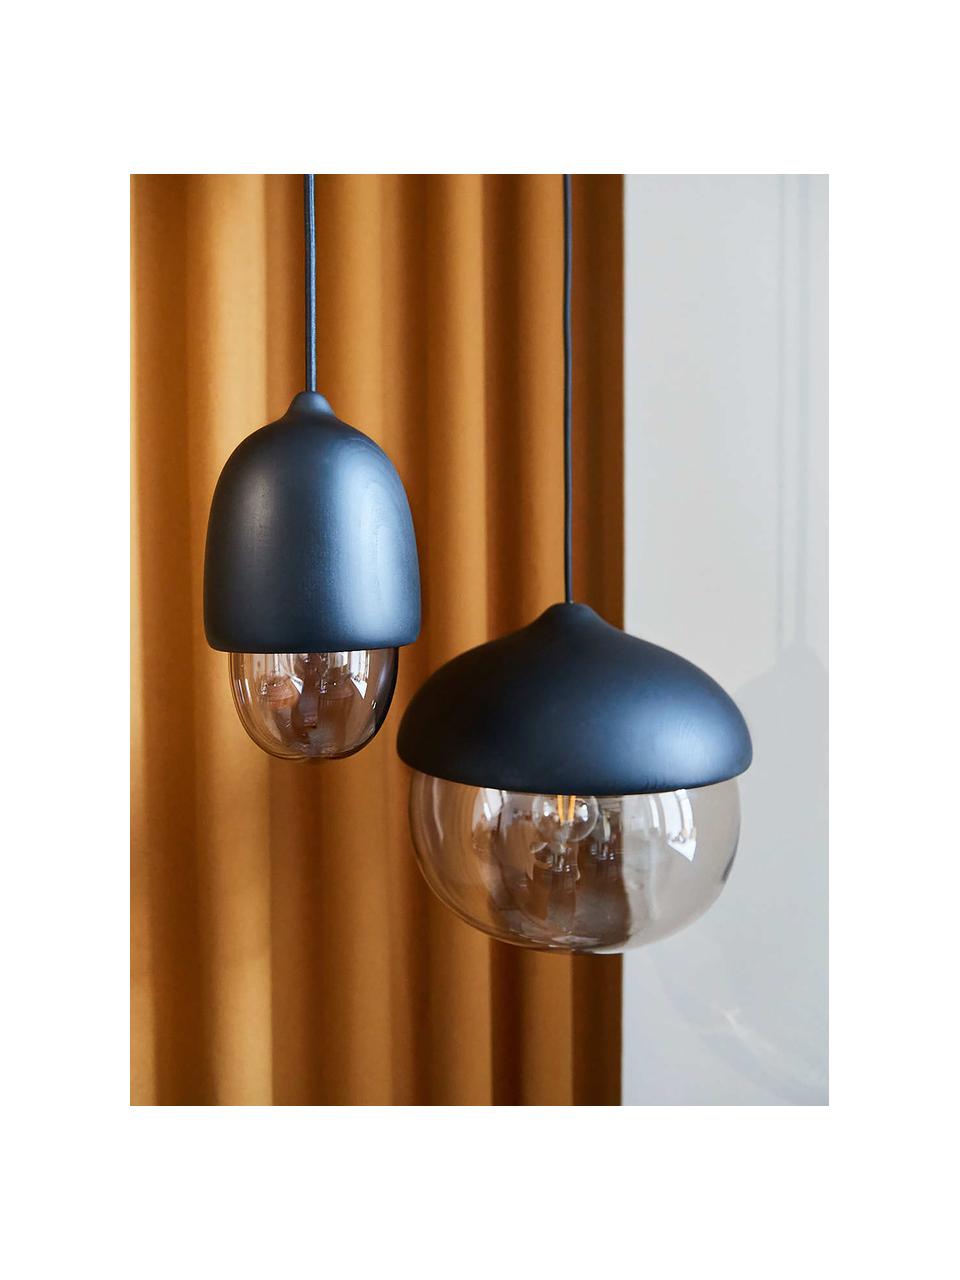 Kleine hanglamp Terho in de eikelvorm, mondgeblazen, Zwart, greige, Ø 14 x H 22 cm